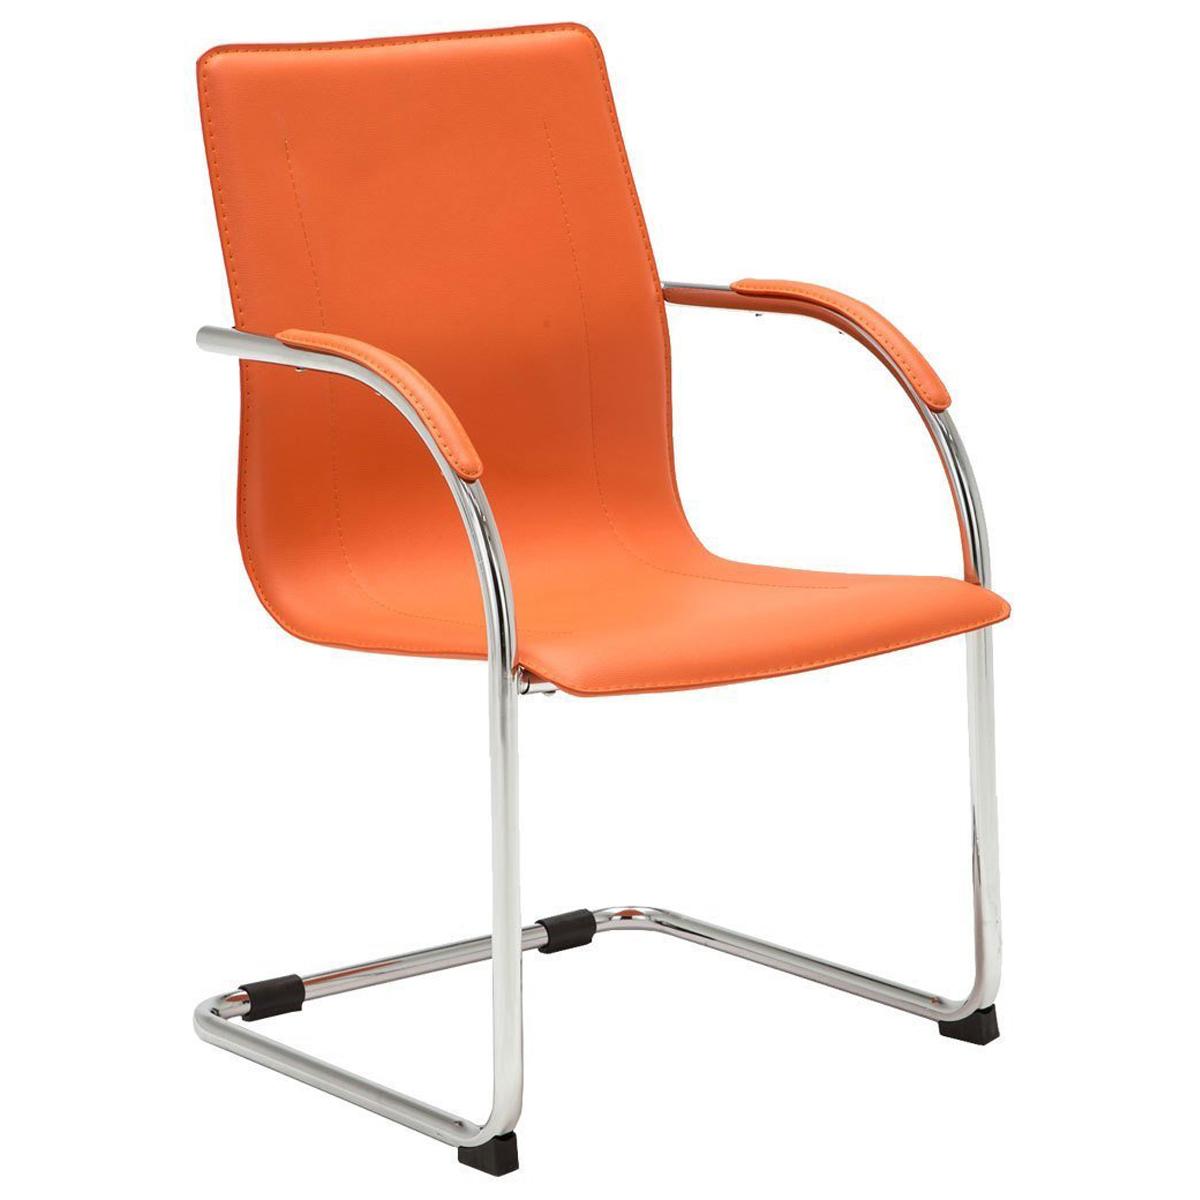 Cadeira de Visita FLAP, Estrutura Metálica, Design Moderno, Em Pele, Cor Laranja